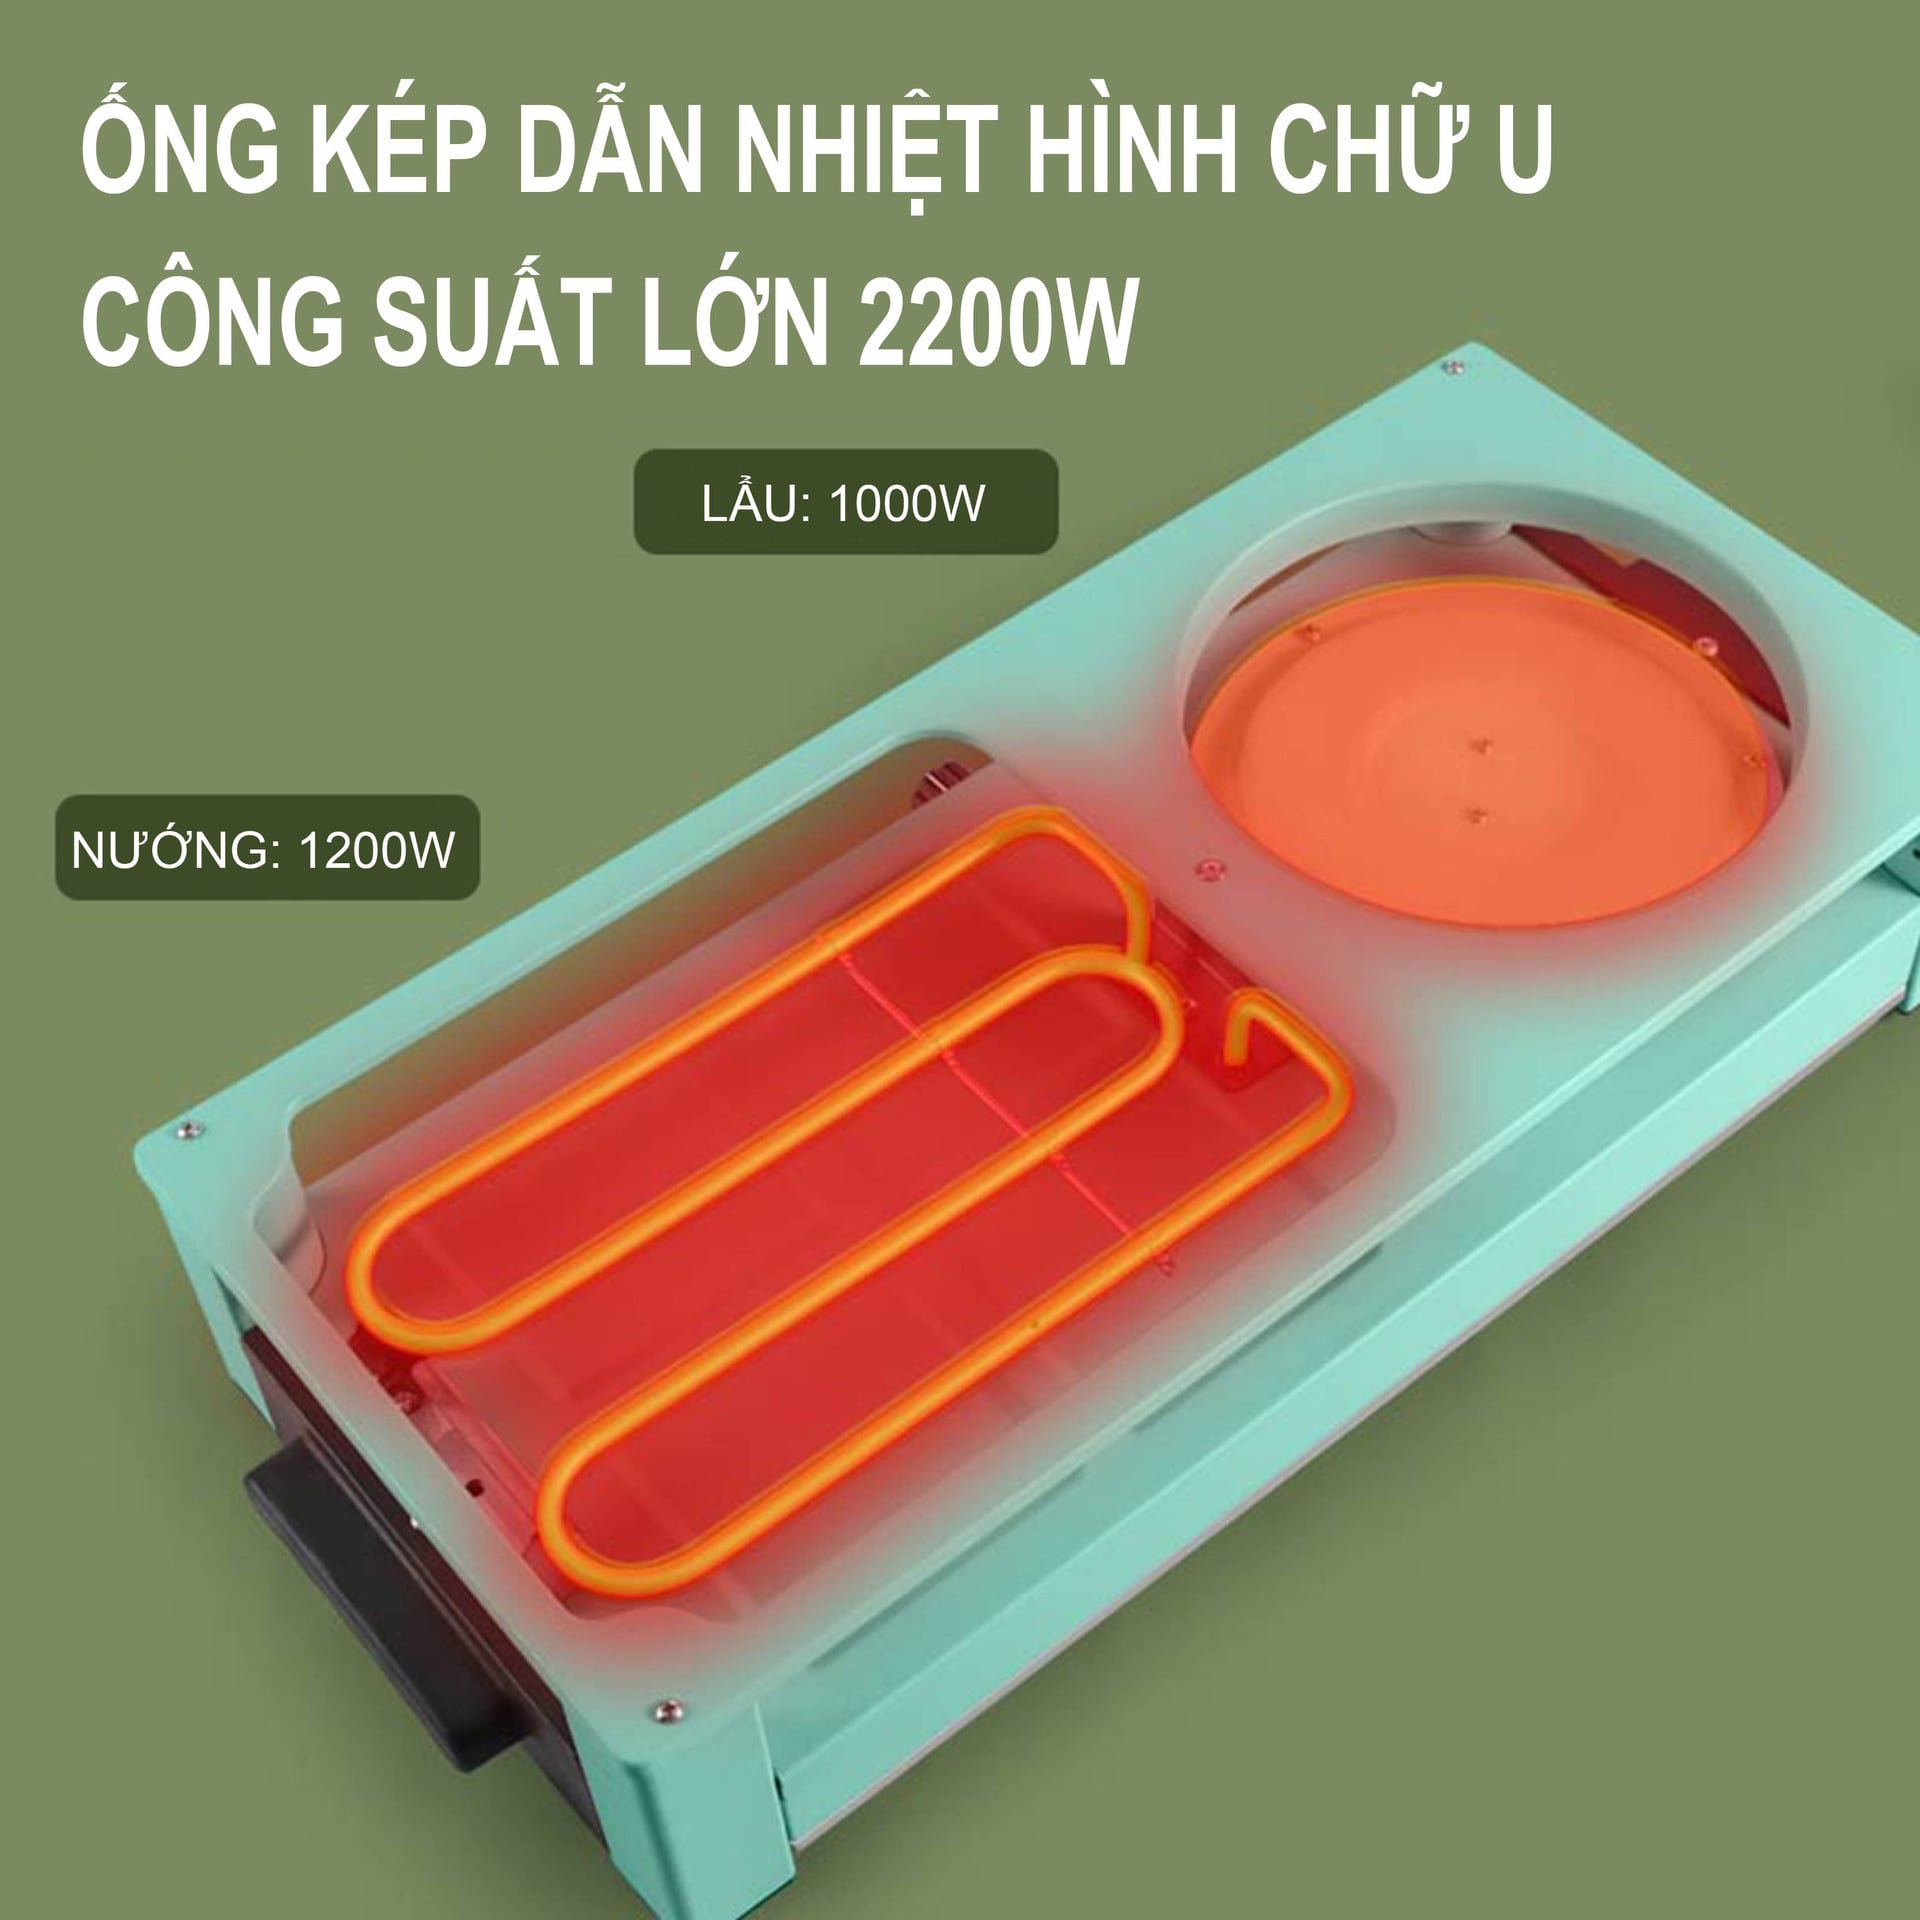 Bếp lẩu nướng 2 mâm nhiệt NSh DK-303 tích hợp vừa nướng vừa lẩu có 2 nút diều khiển riêng biệt